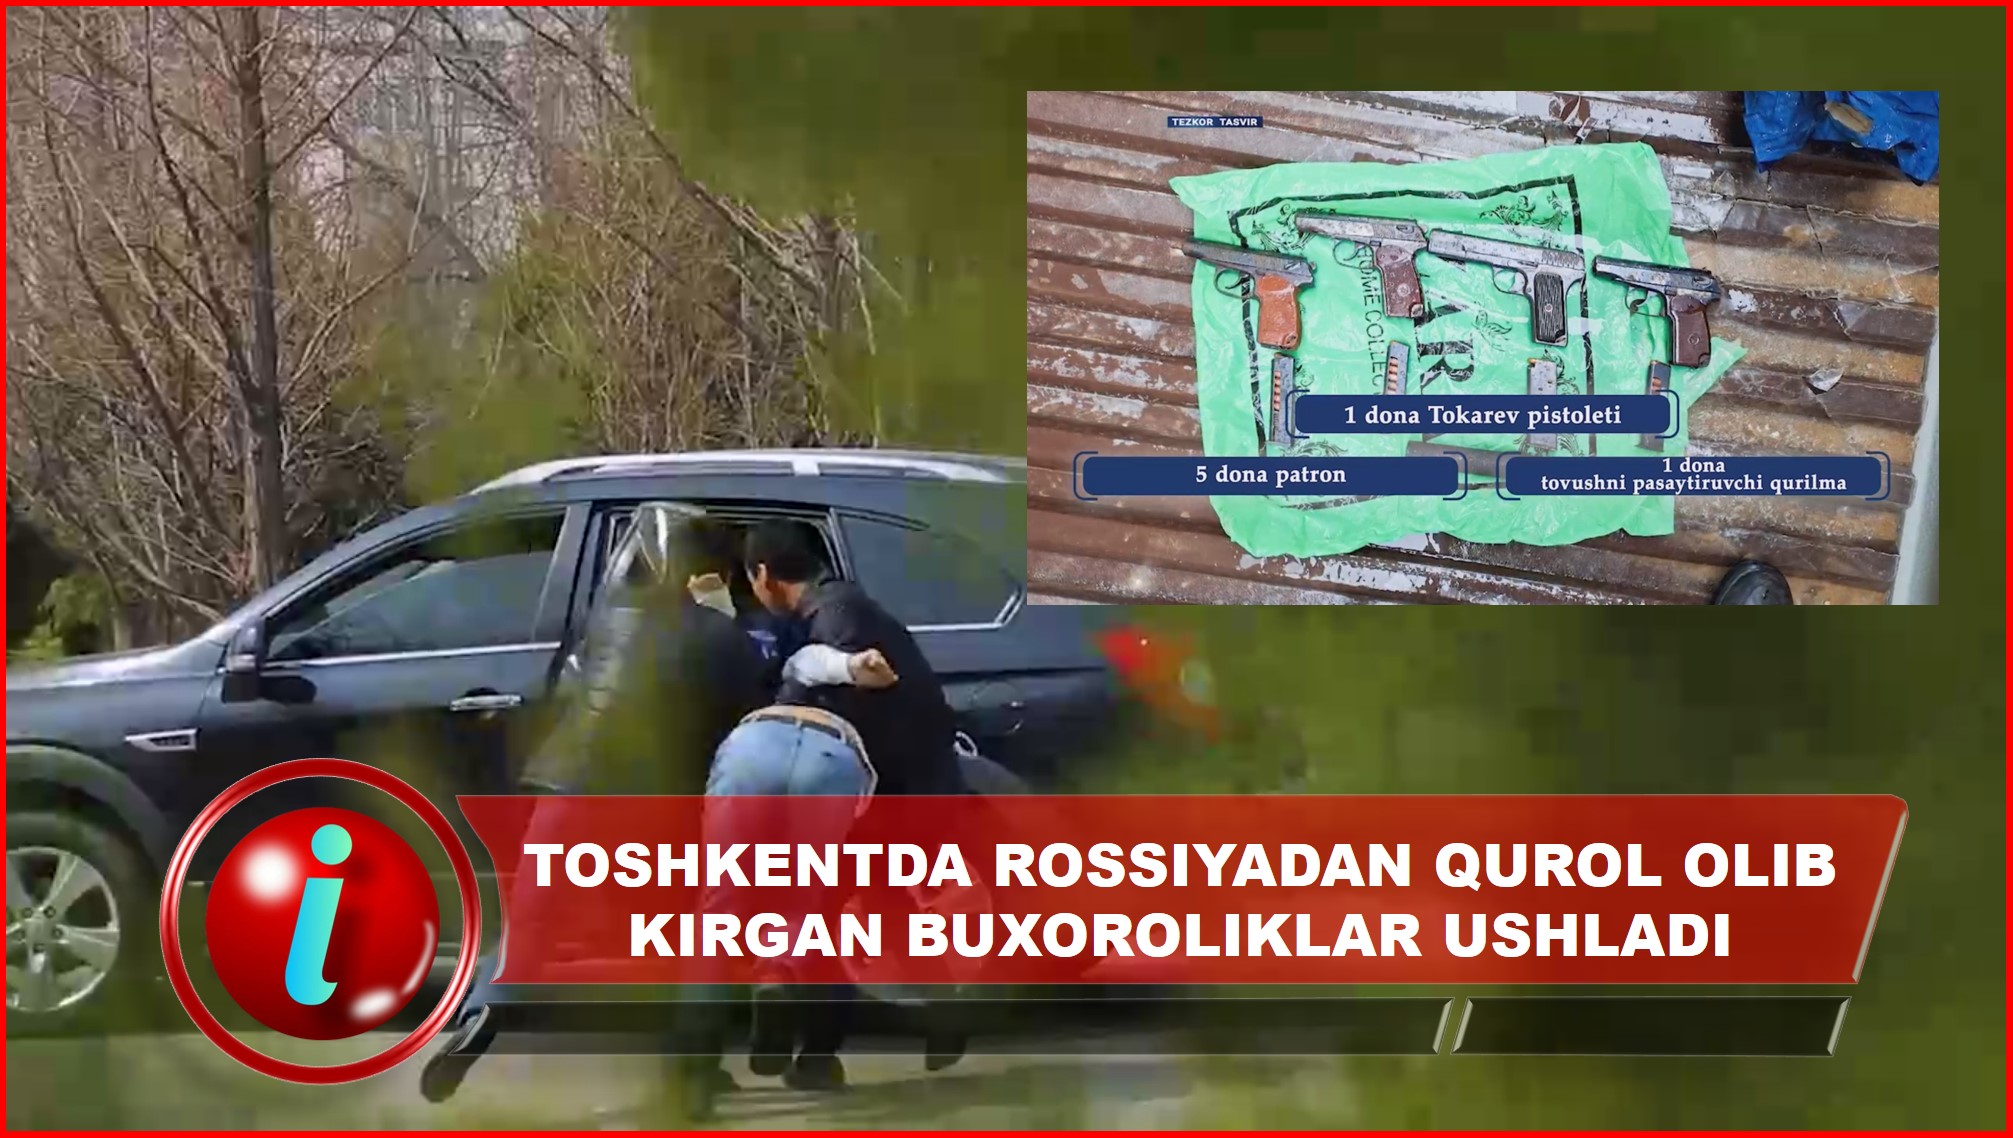 DXX xodimlari Toshkentda Rossiyadan qurol olib kirgan buxoroliklarni ushladi